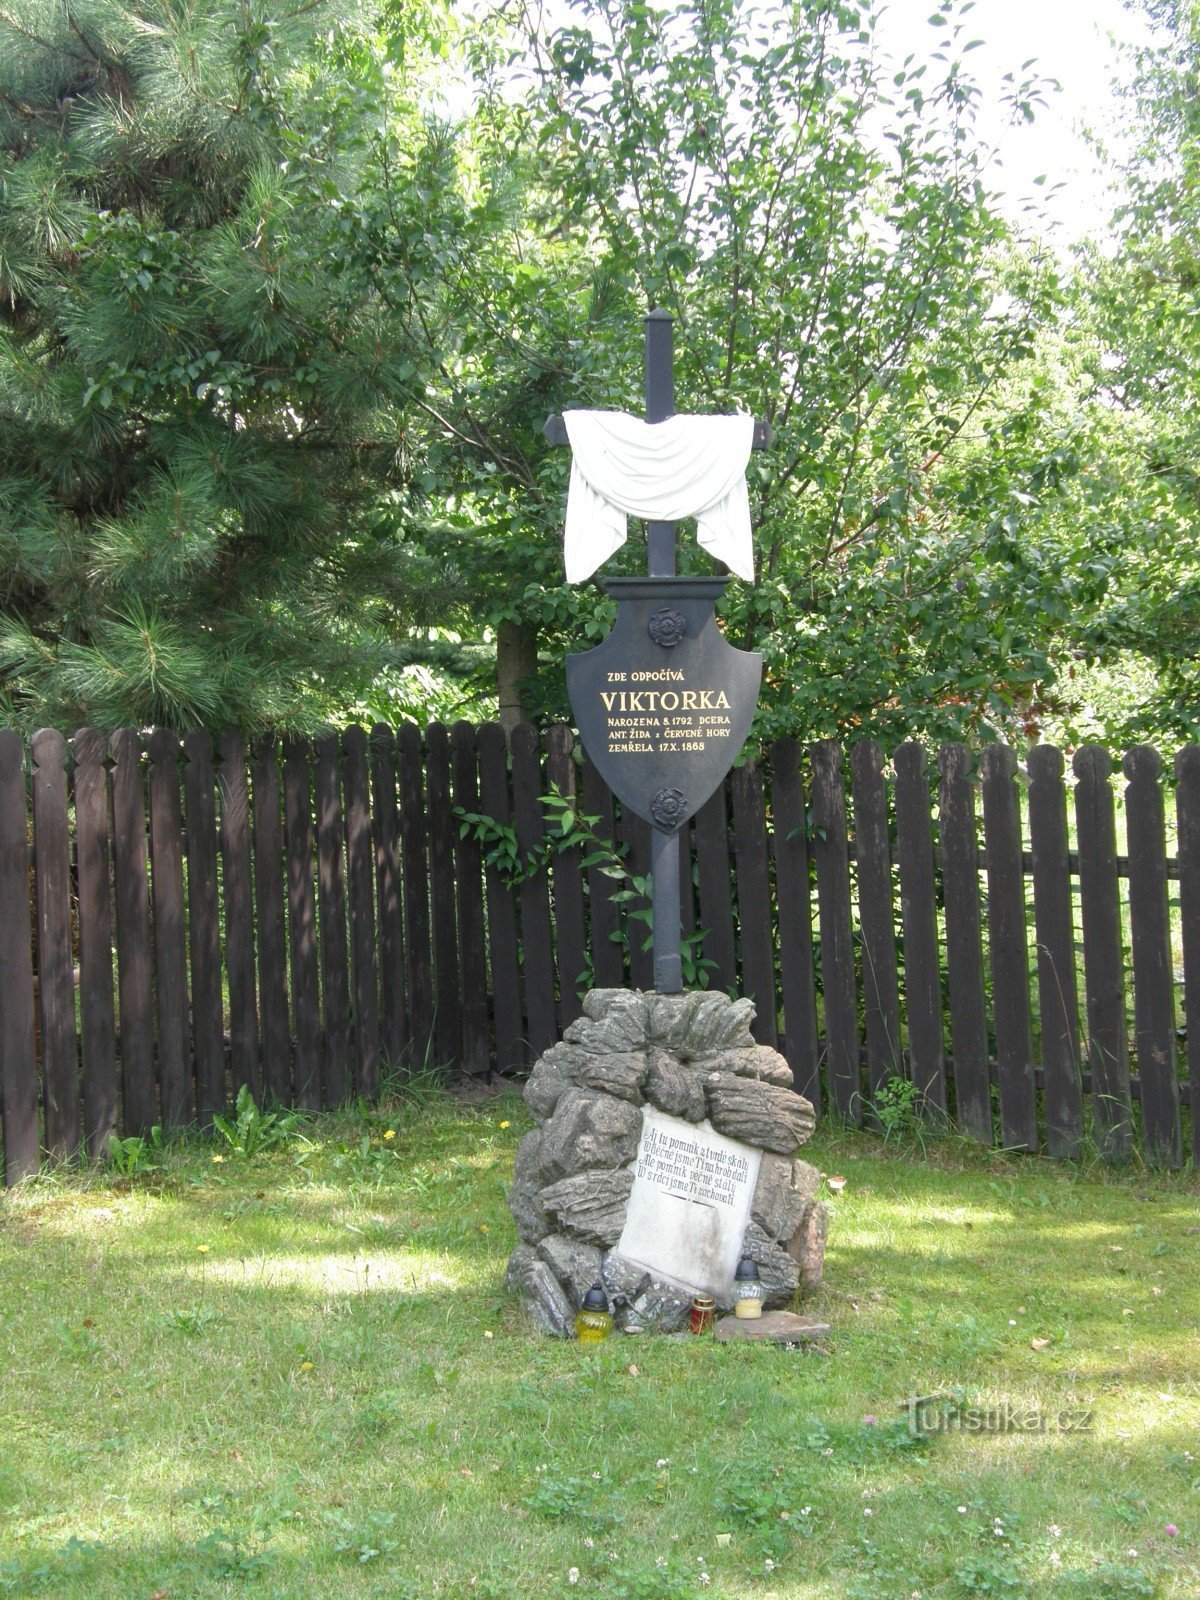 Viktorka's grave in Červený Kostelec